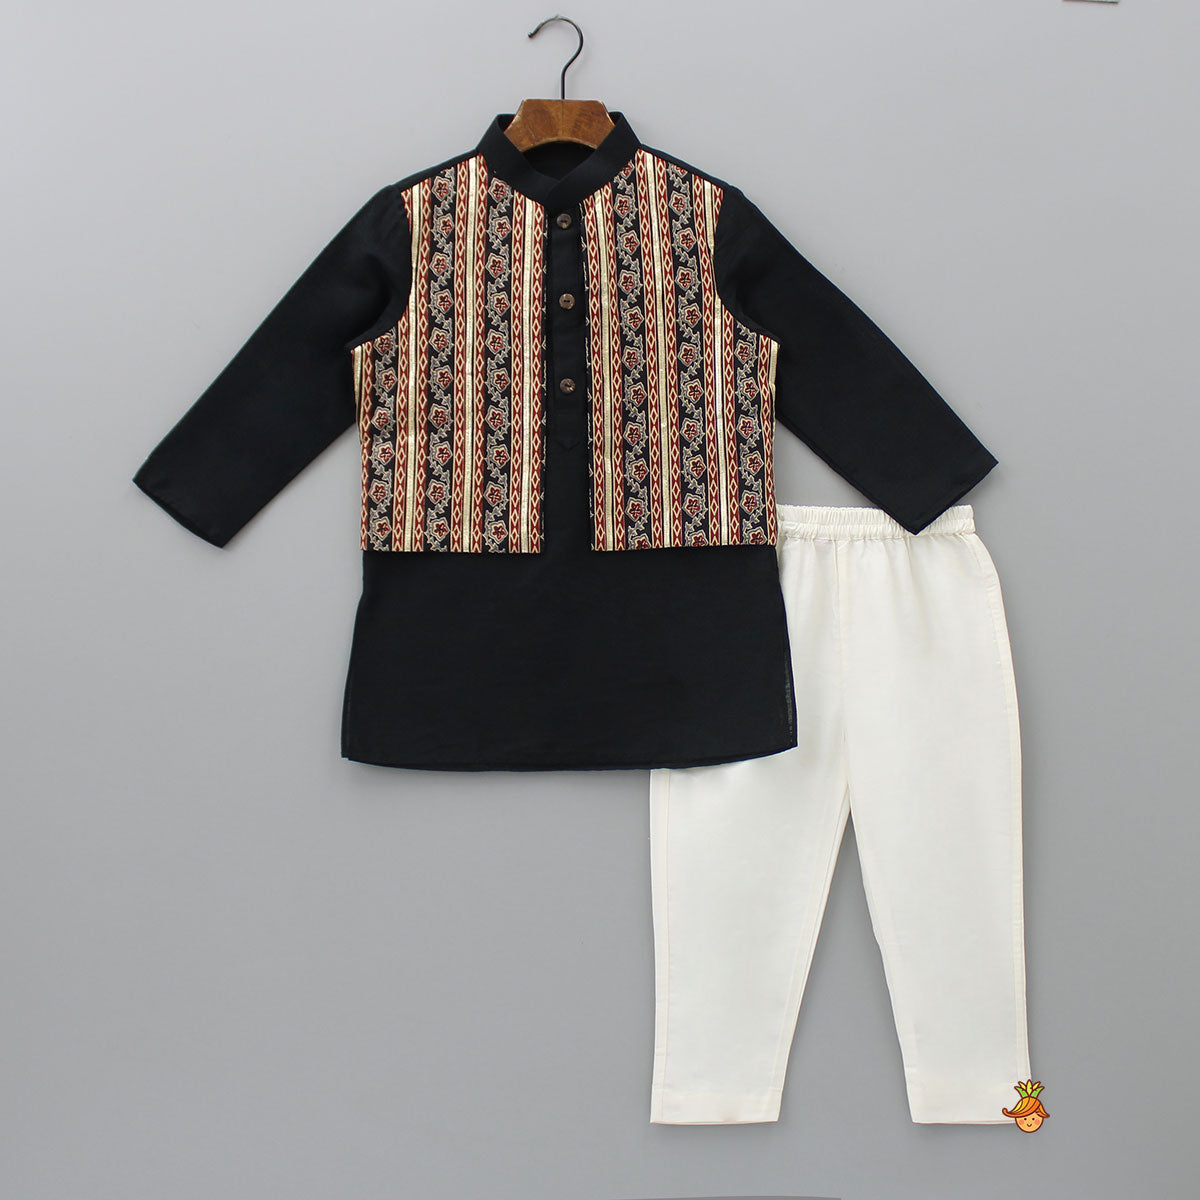 Gota Lace Detailed Jacket Style Black Kurta And Pyjama